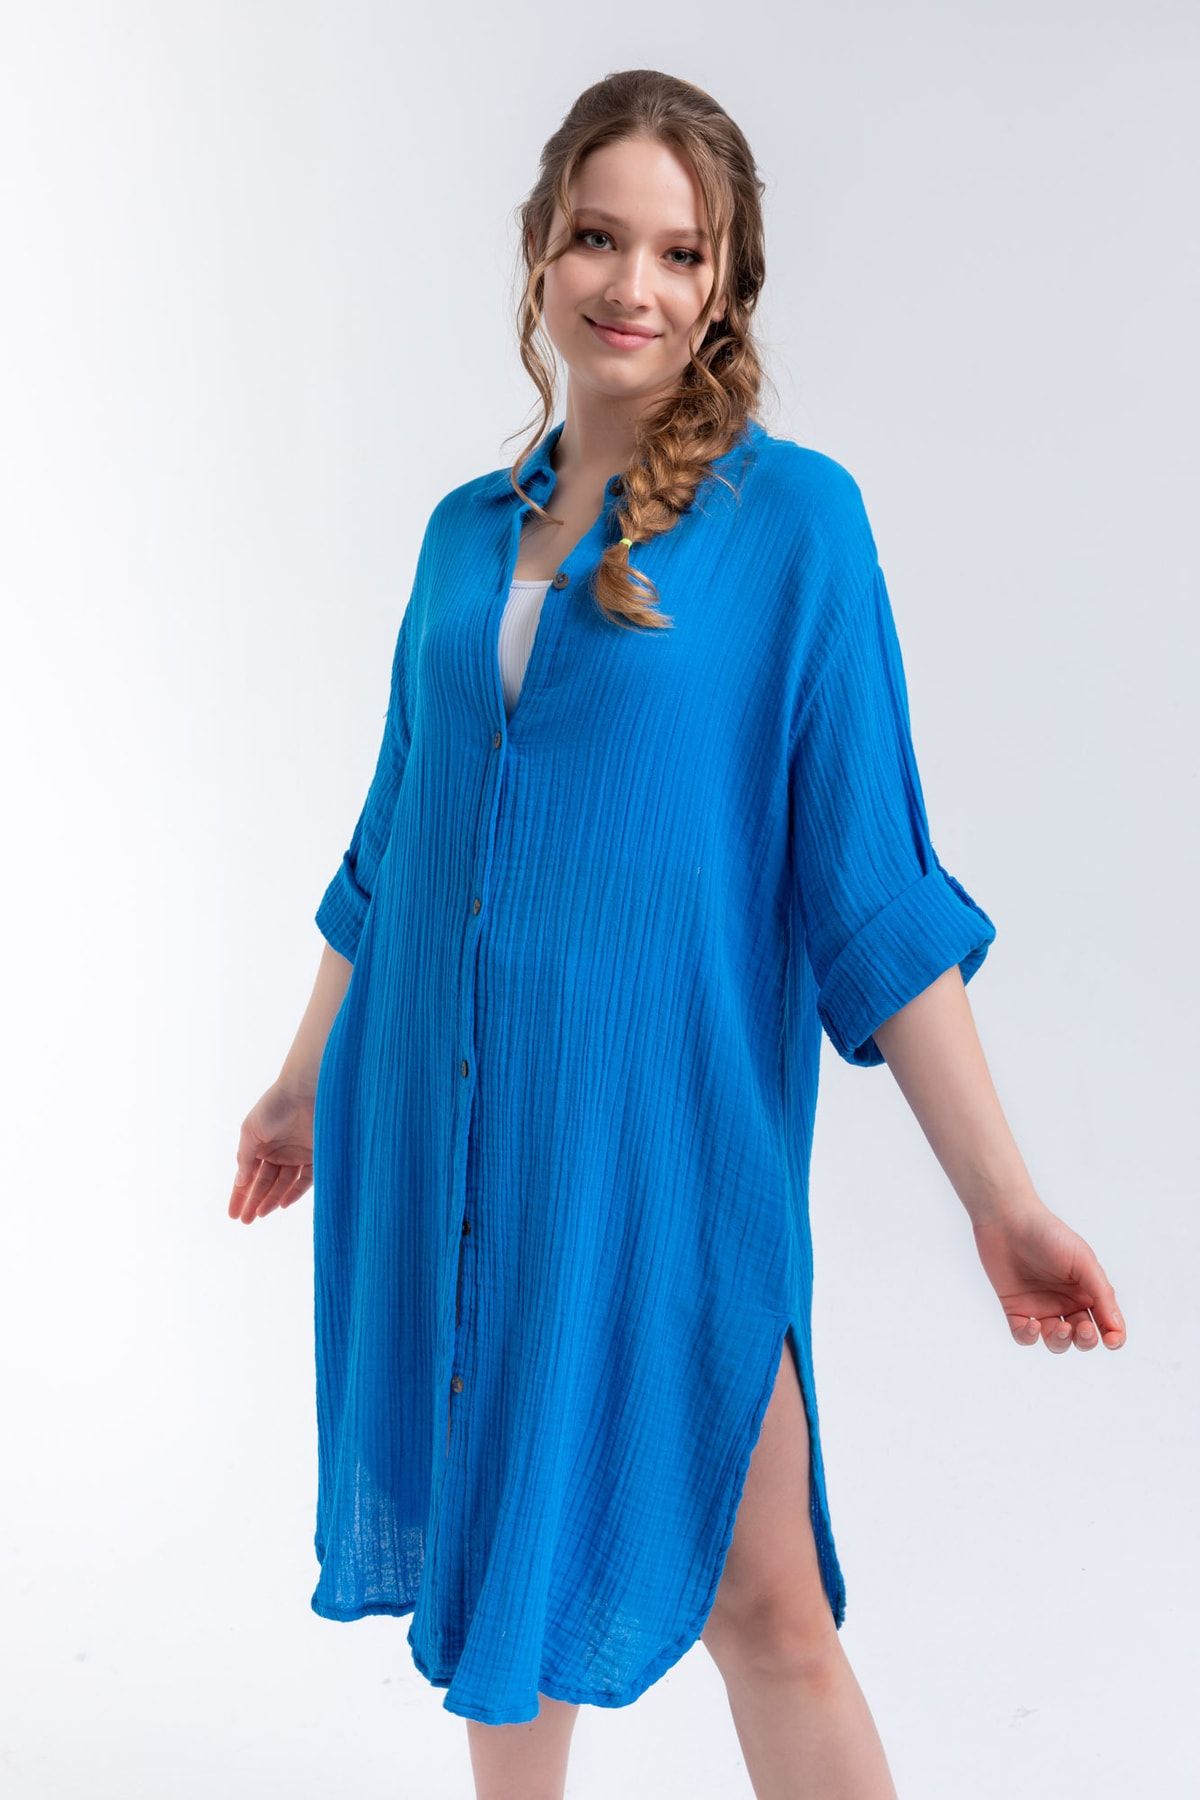 Begonville Caroline Muslin %100 Pamuk Gömlek Elbise - Mavi